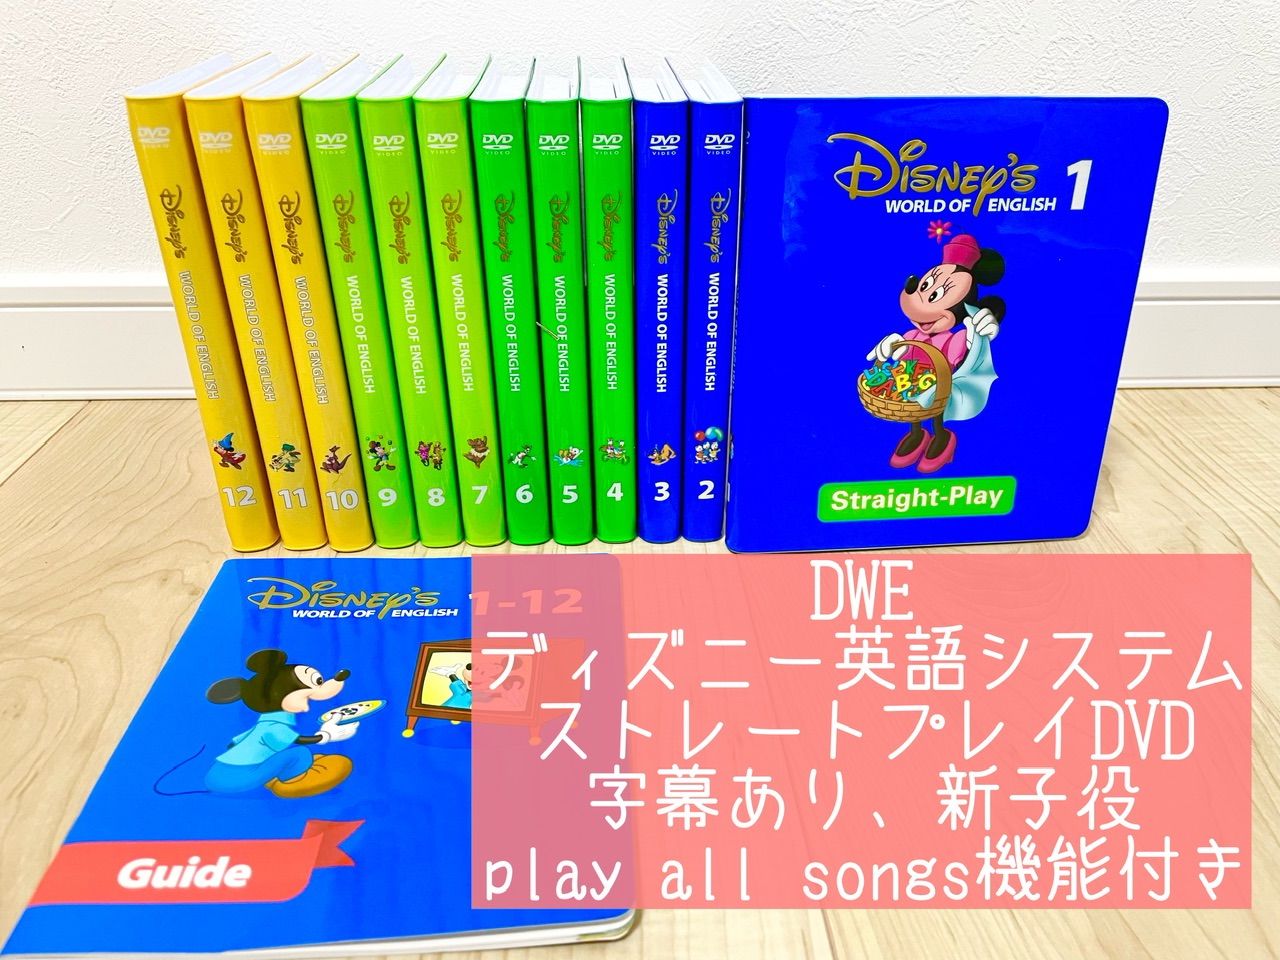 ディズニー英語 DWE DVDメイトandストレートプレイDVD新子役字幕あり-